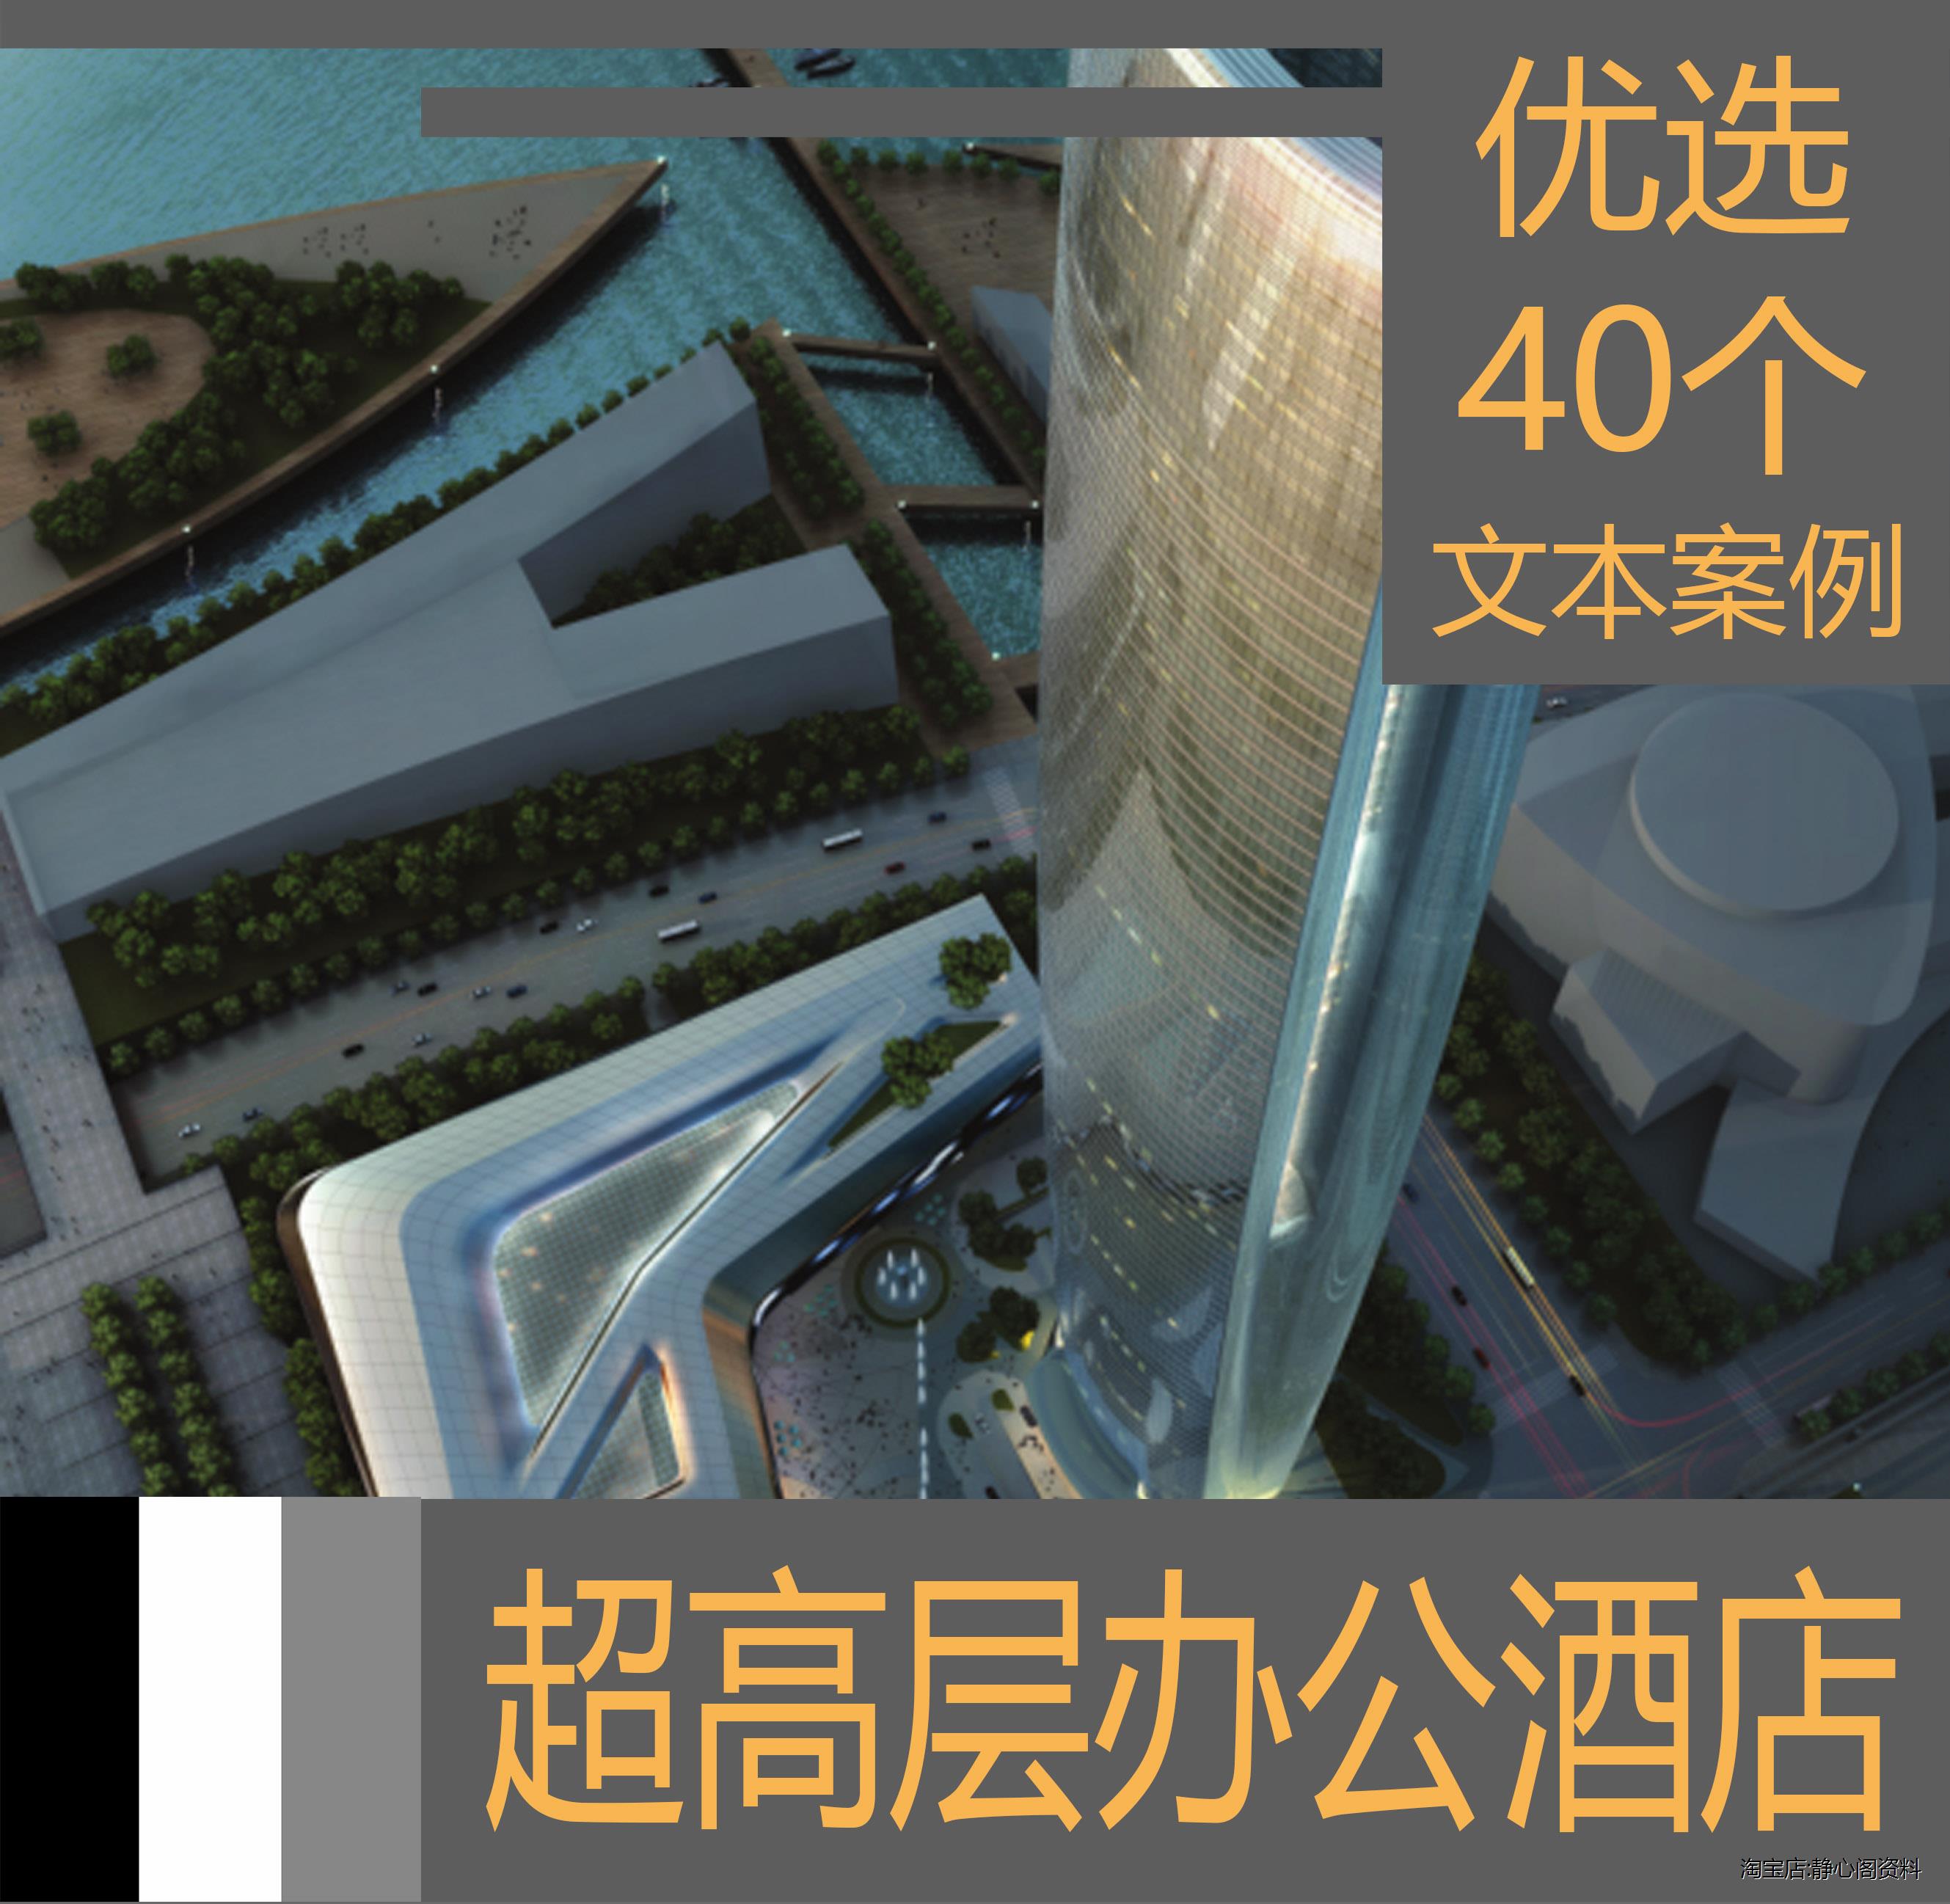 776超高层办公商务酒店建筑设计方案项目分析案例素材文本素材